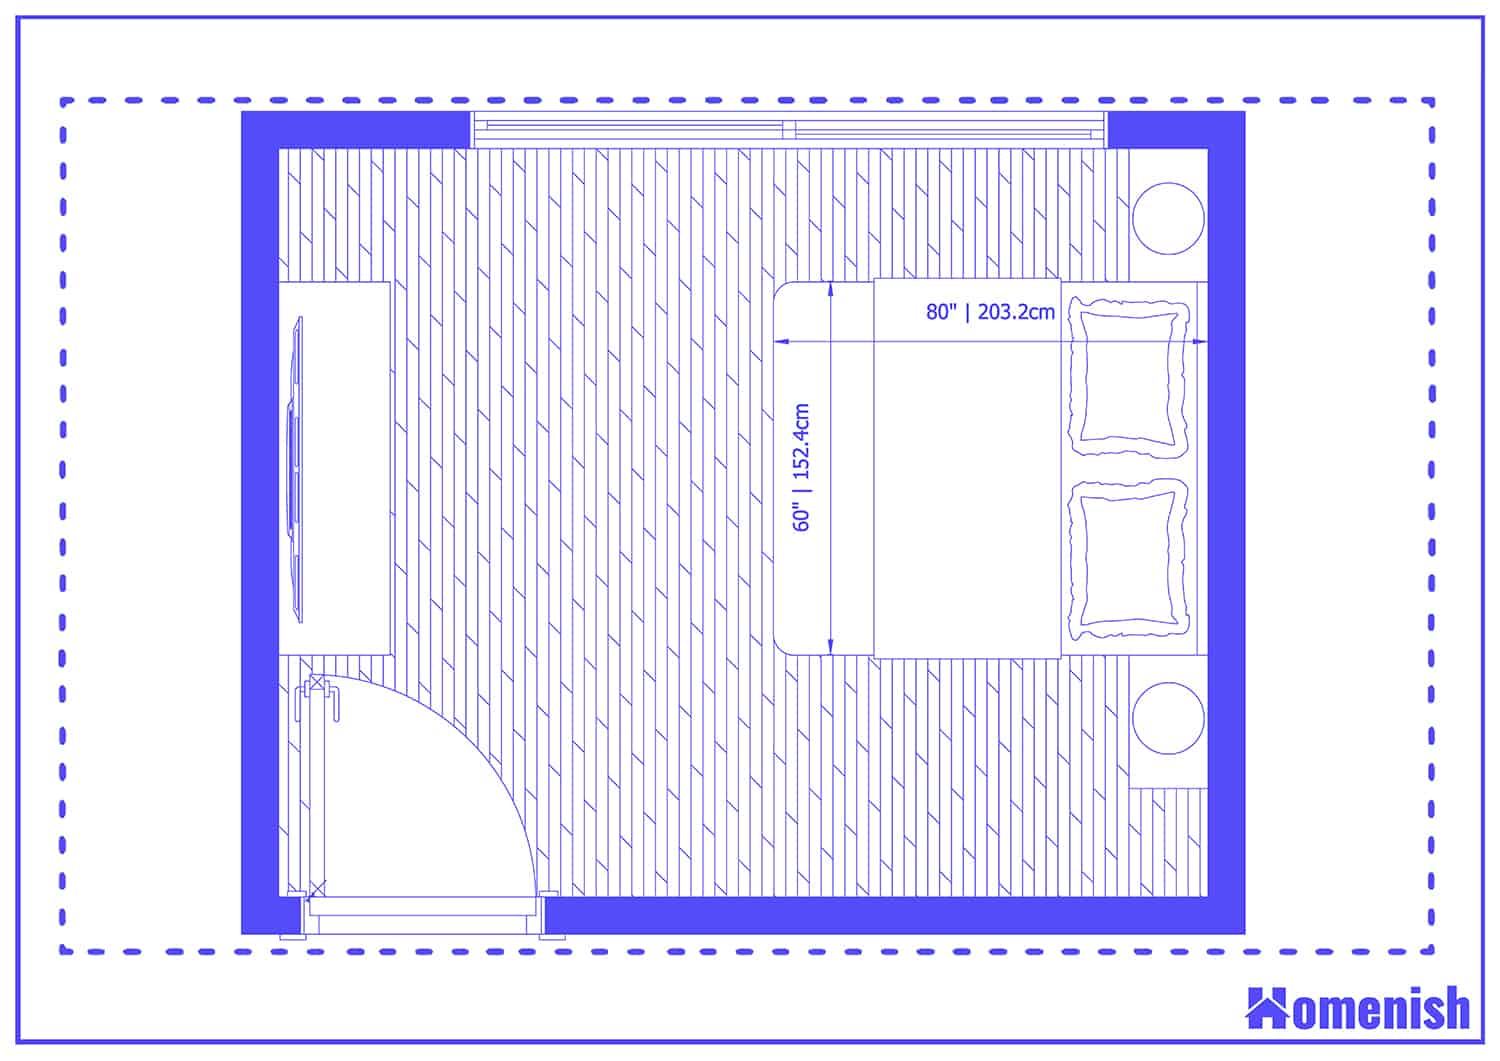 Classic Chic Bedroom Layout Floor Plan